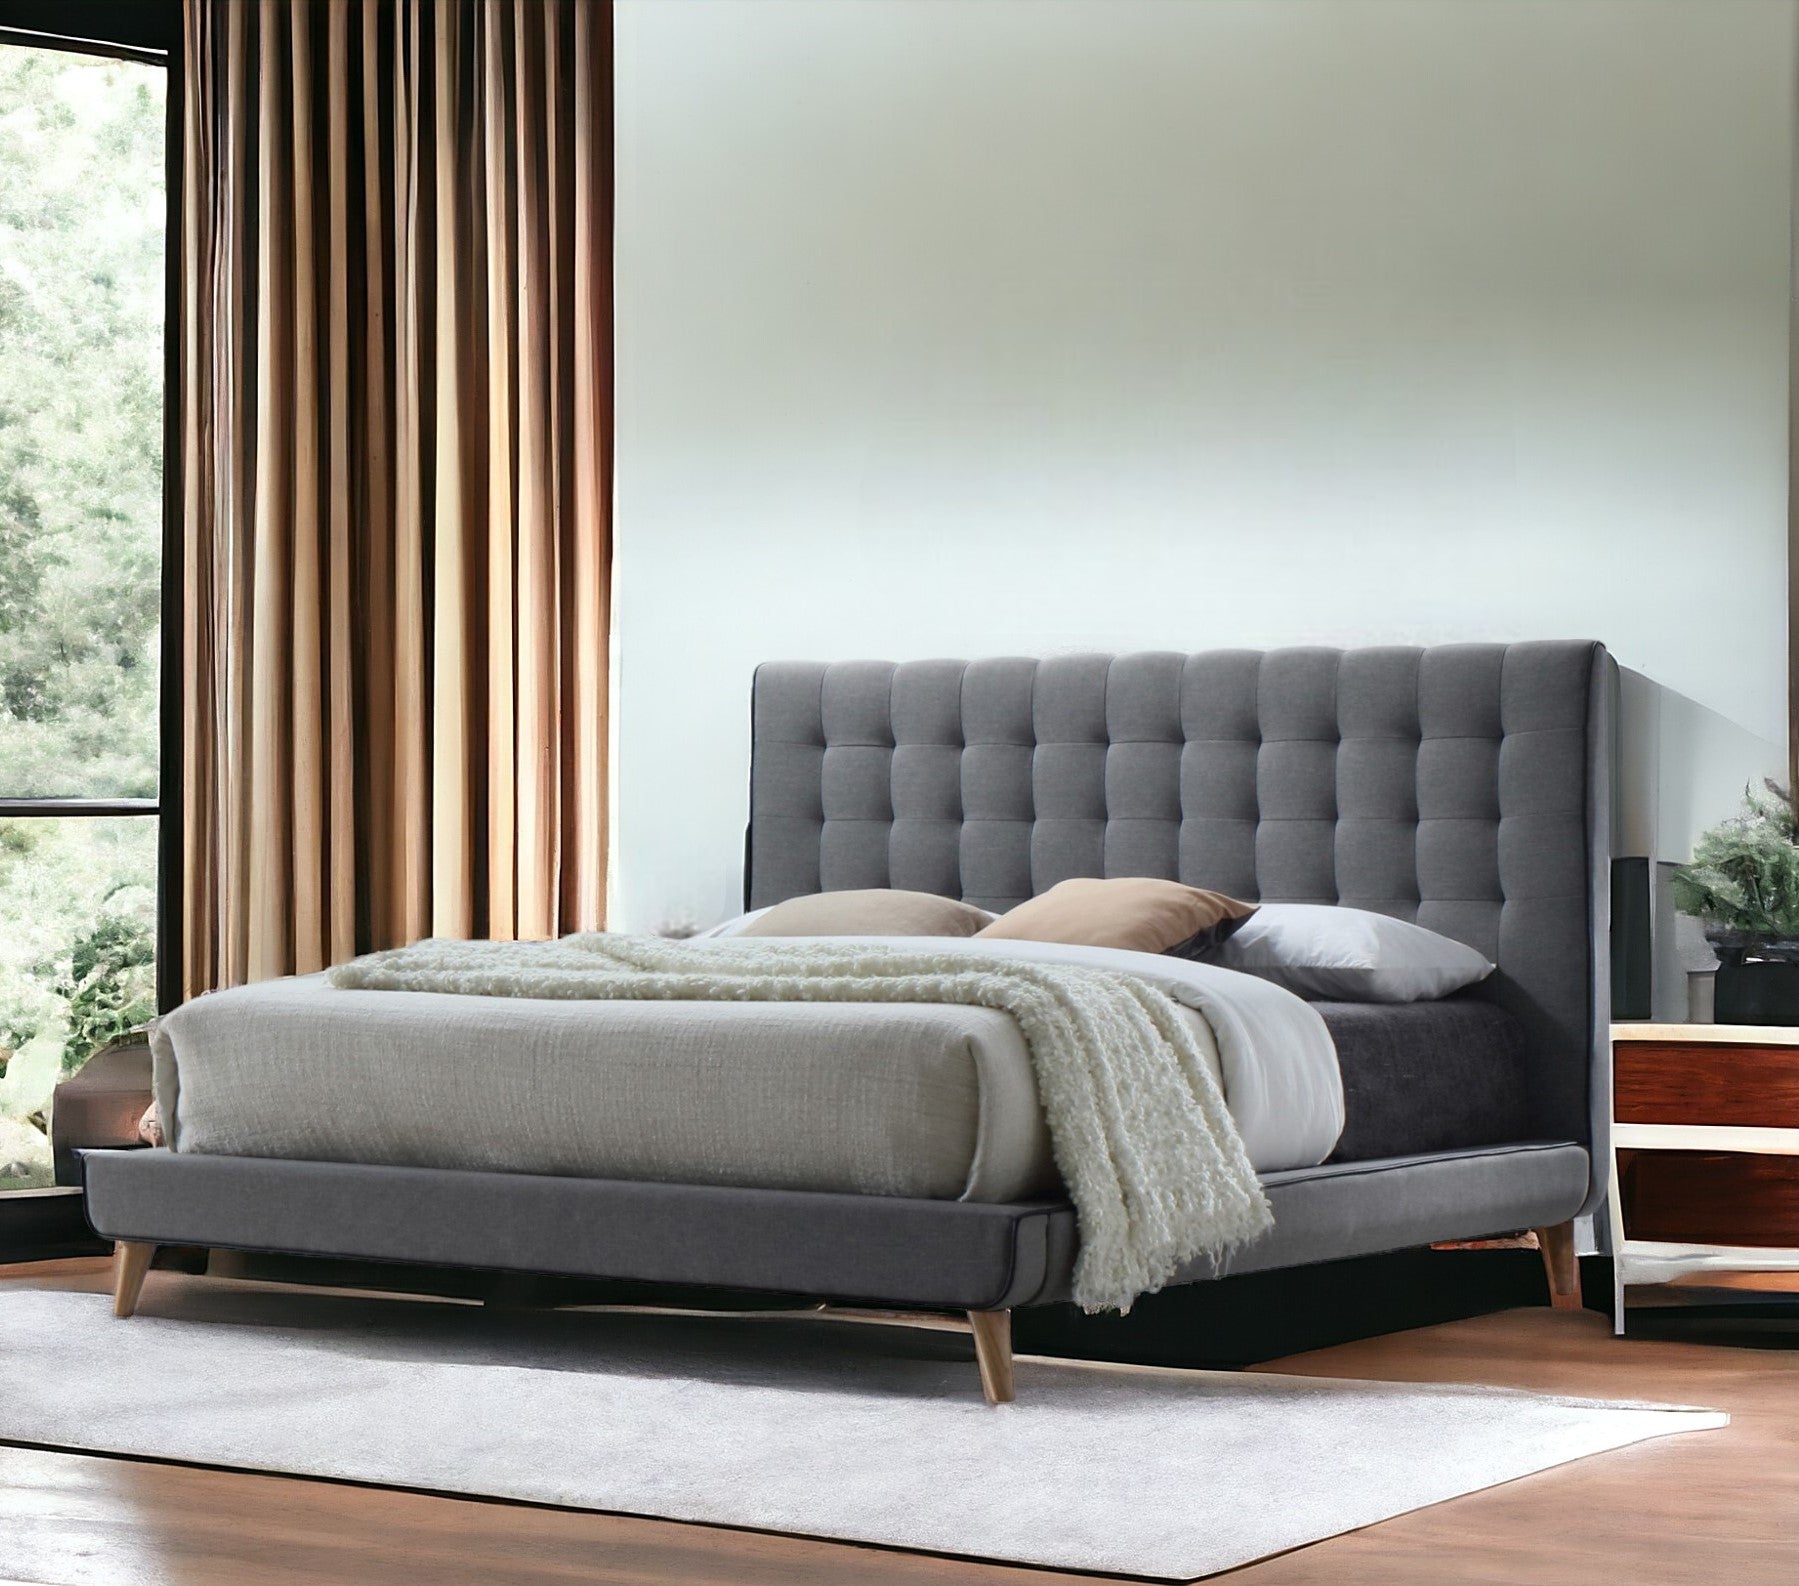 Tufted Light Gray Upholstered Linen Bed